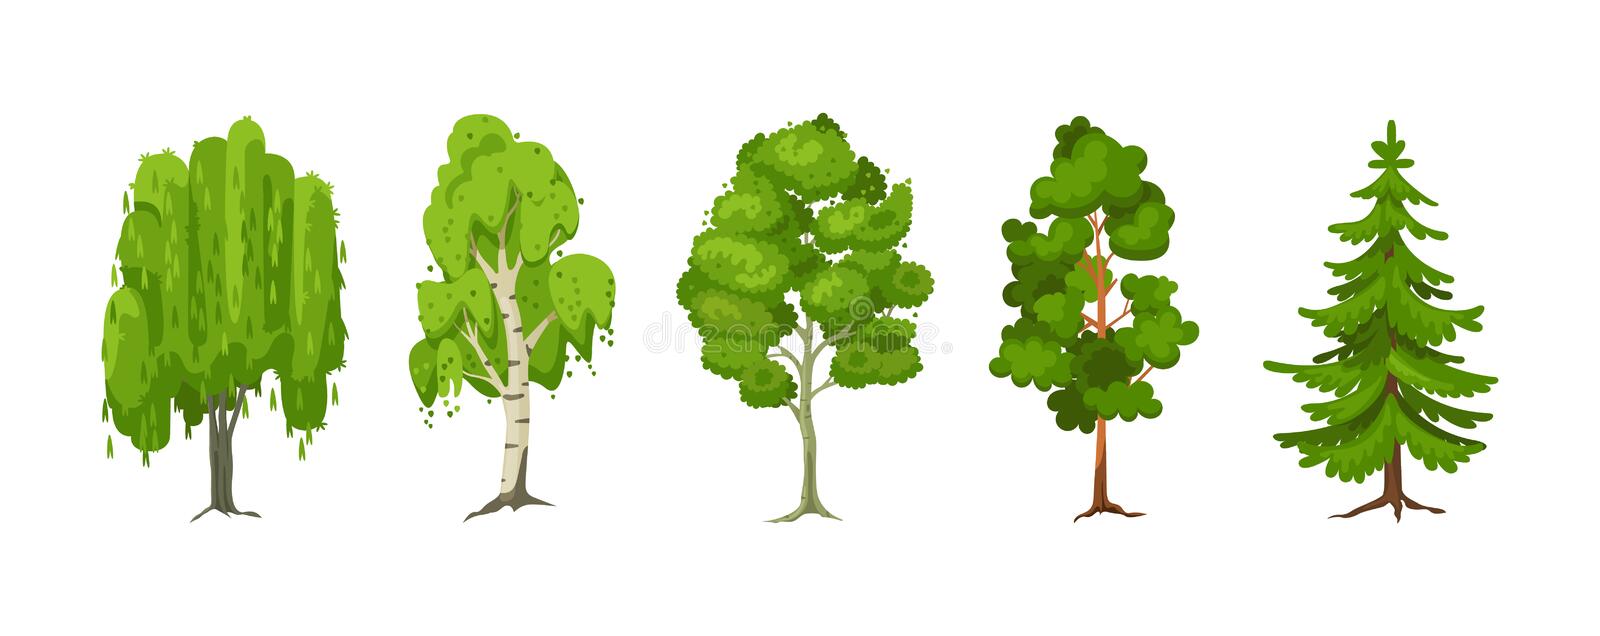 rysunek letni zestaw sosny sosnowe z swierkow klonowych lisci zielone duze drzewa sadzeniowe do ogrodow zielony duzy 212779099